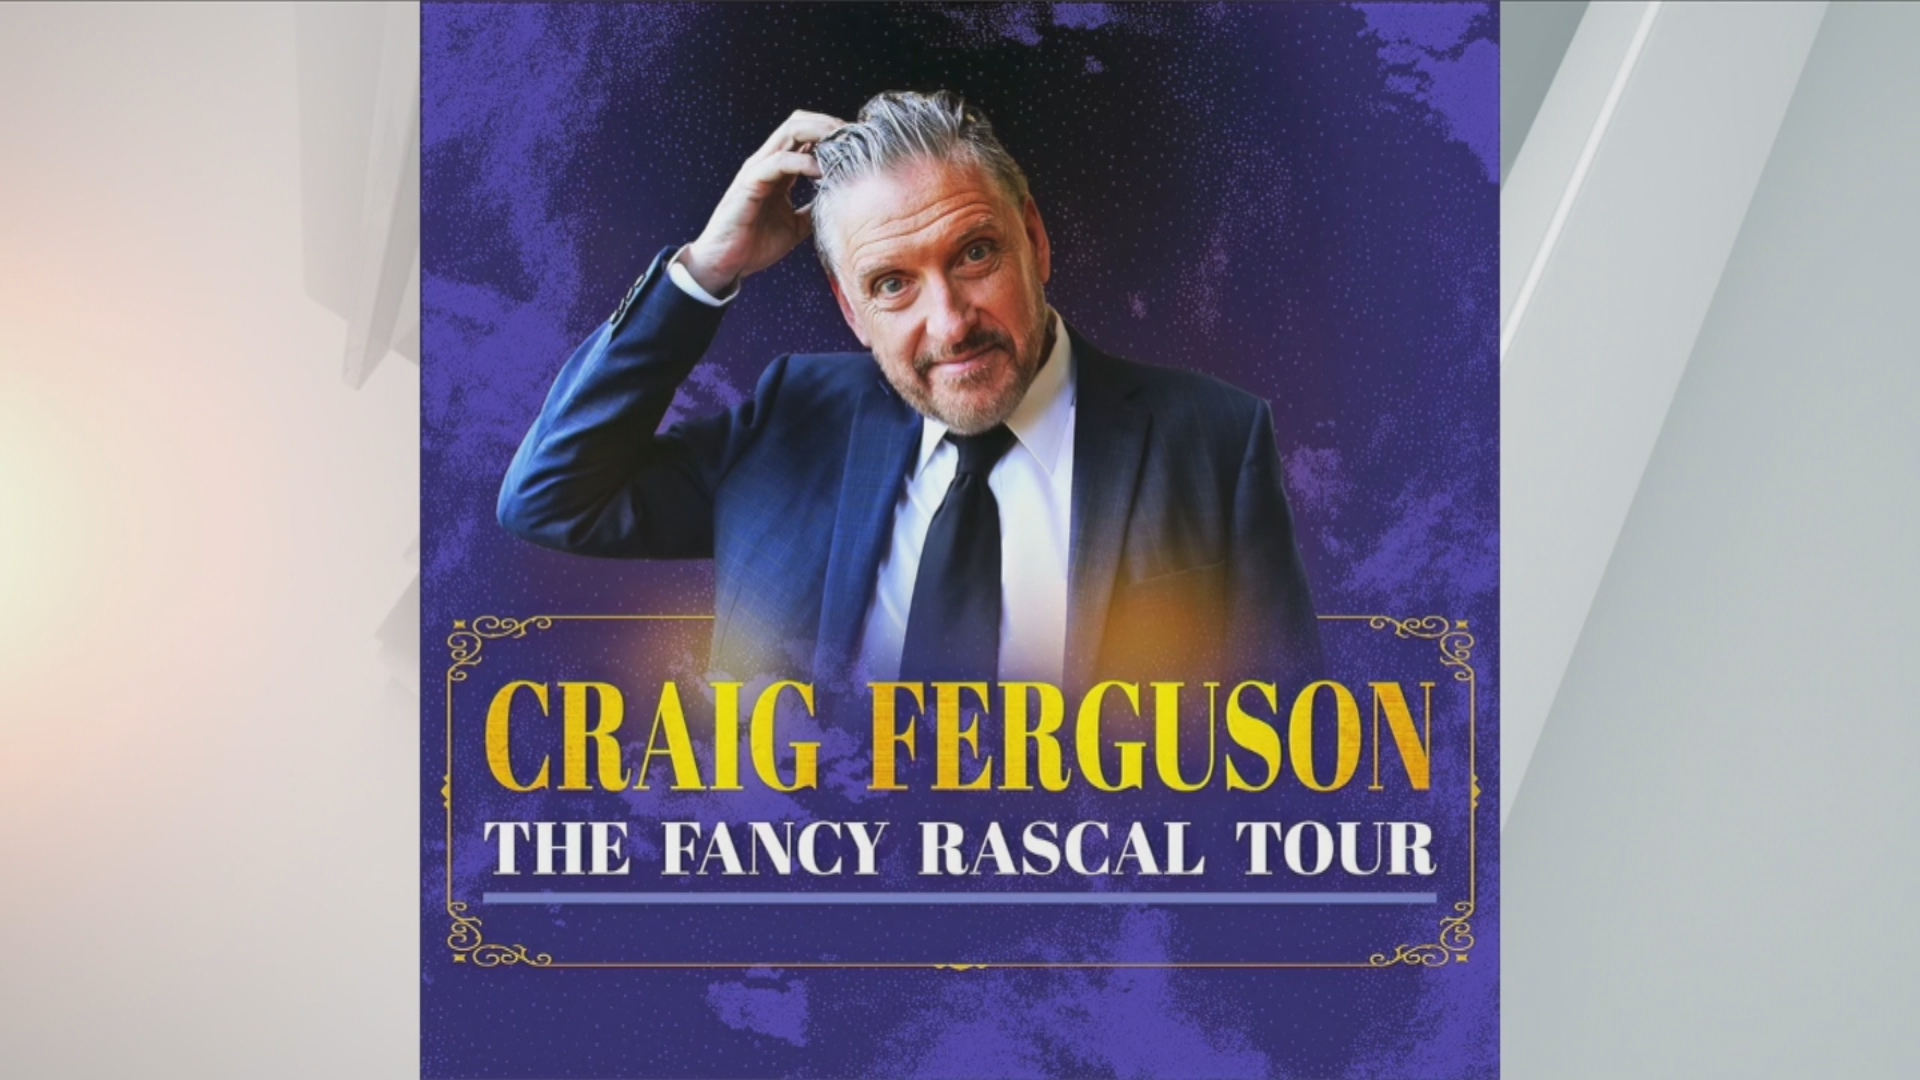 Craig Ferguson performs in Indianapolis Saturday evening